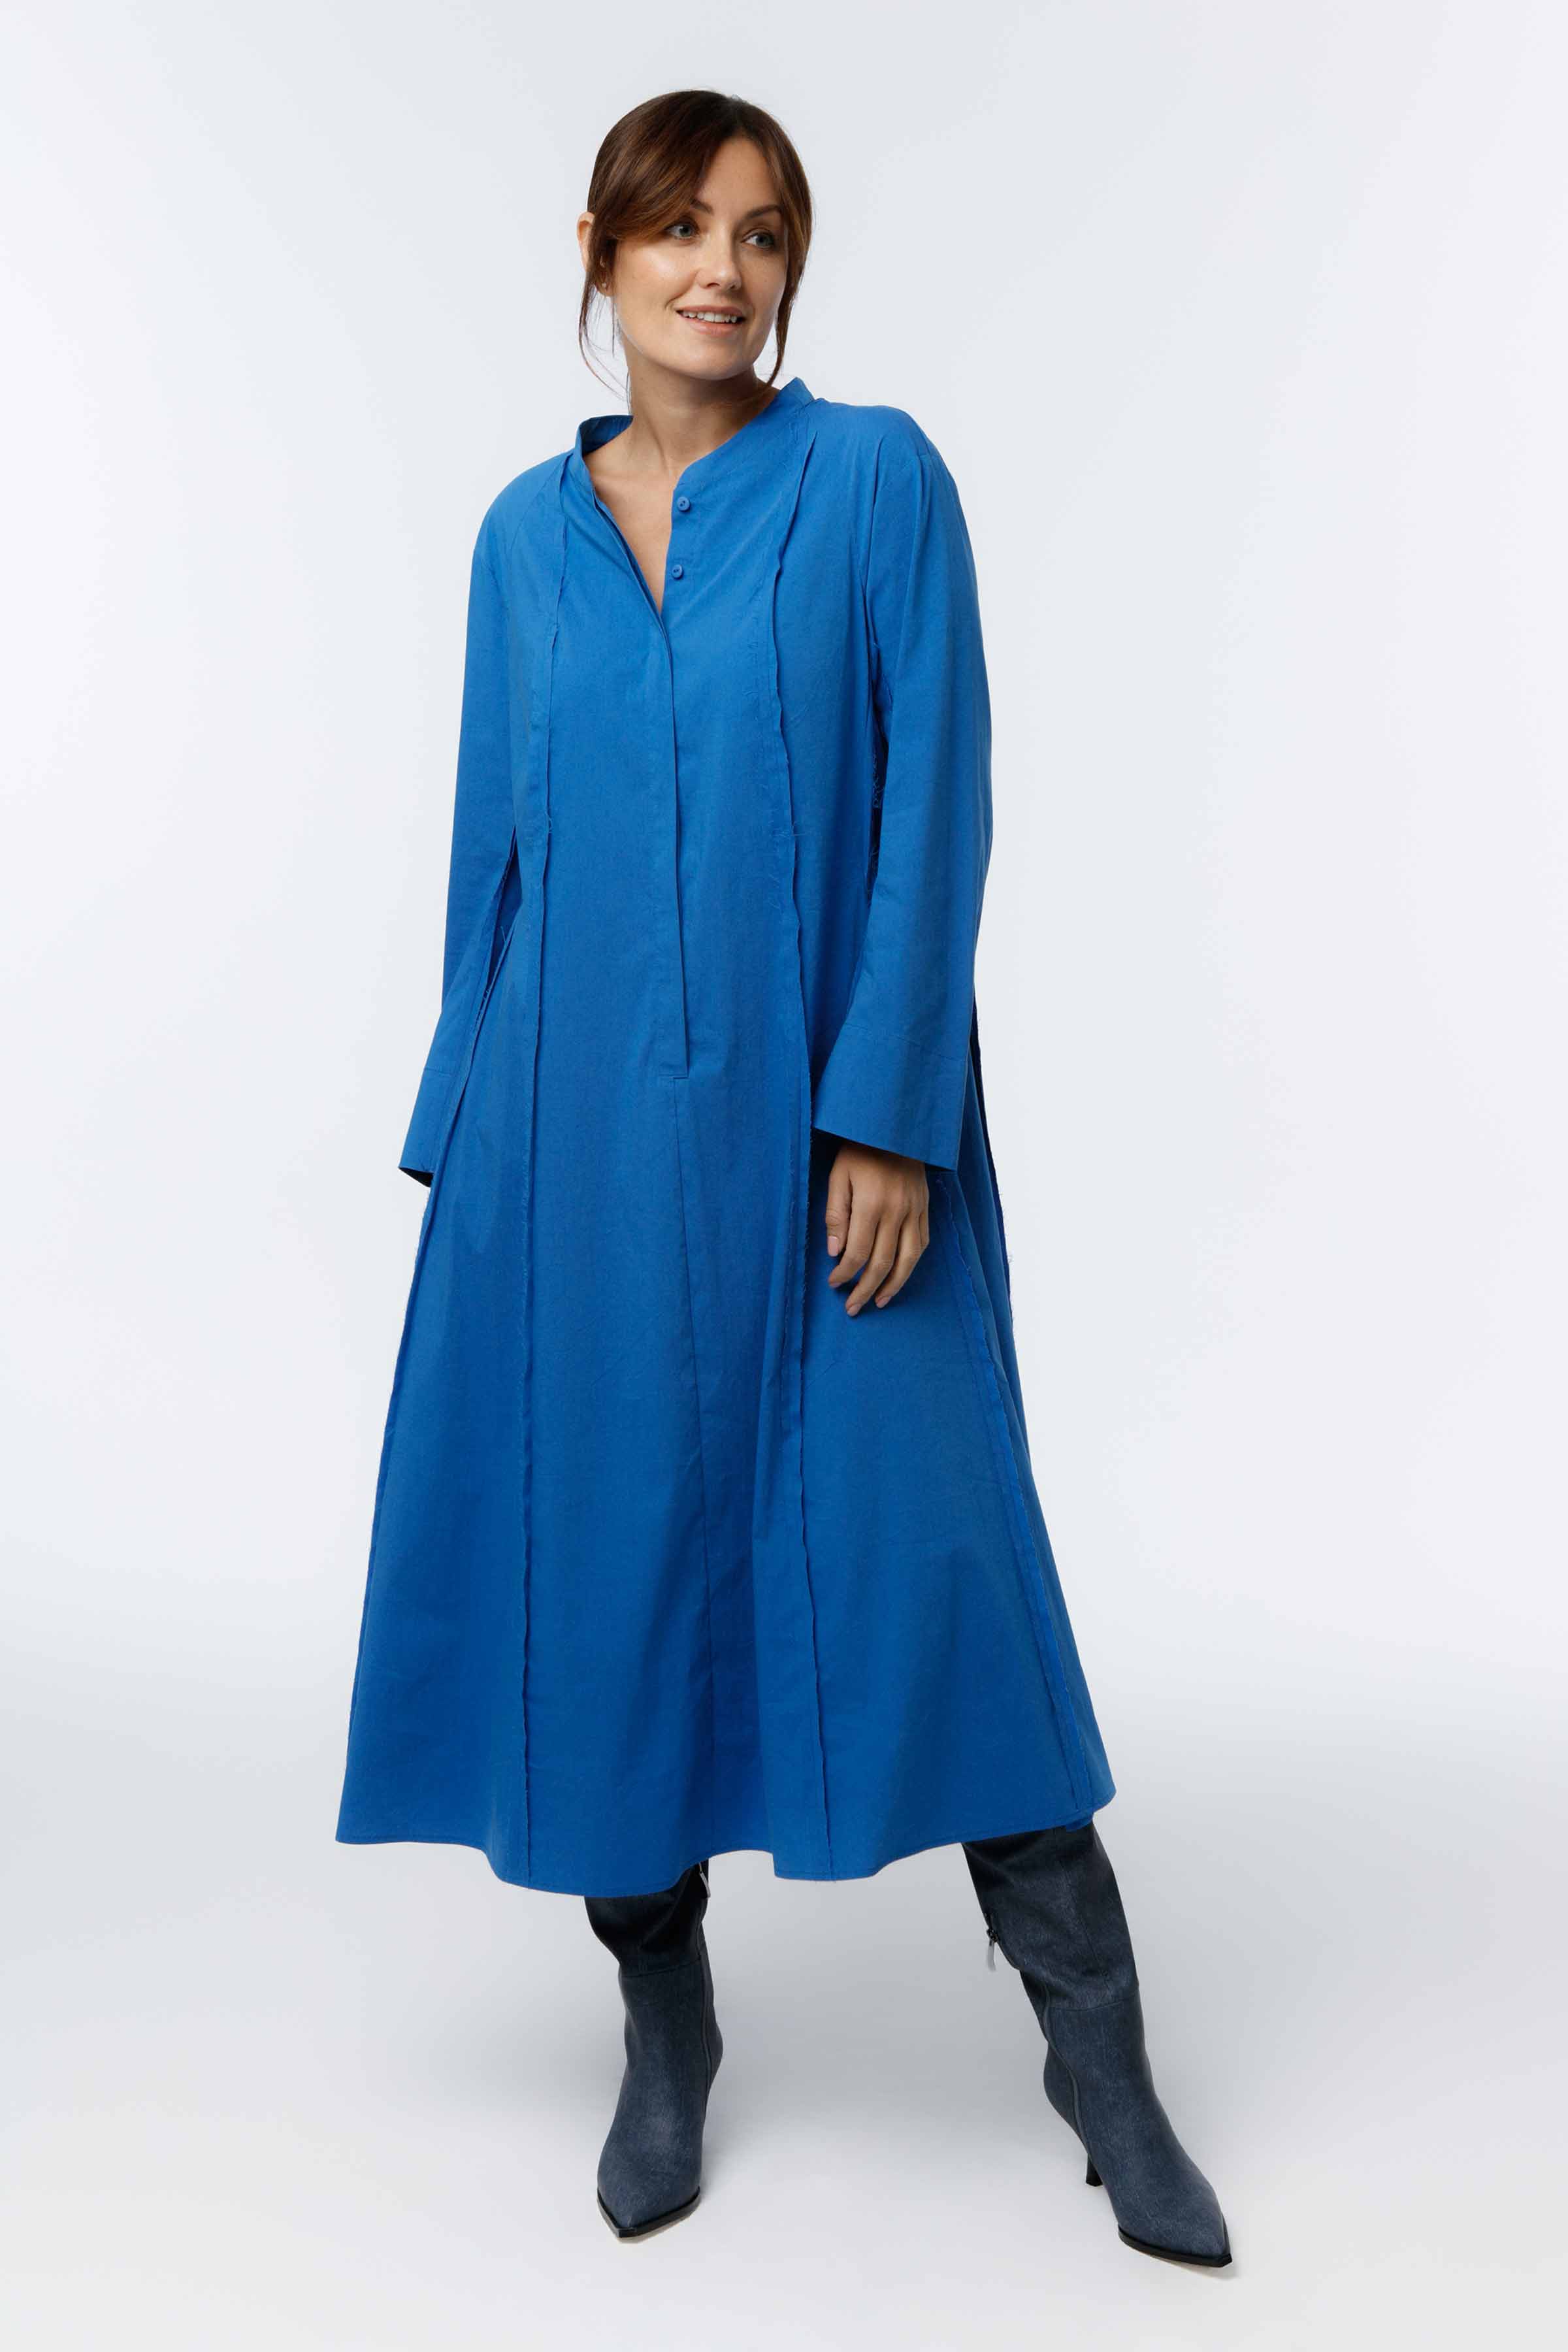 Платье Хлопок гранж 35 Синий (bleu) от Lesel (Лесель)! Заказывайте по ✆ 8 (800) 777 02 37